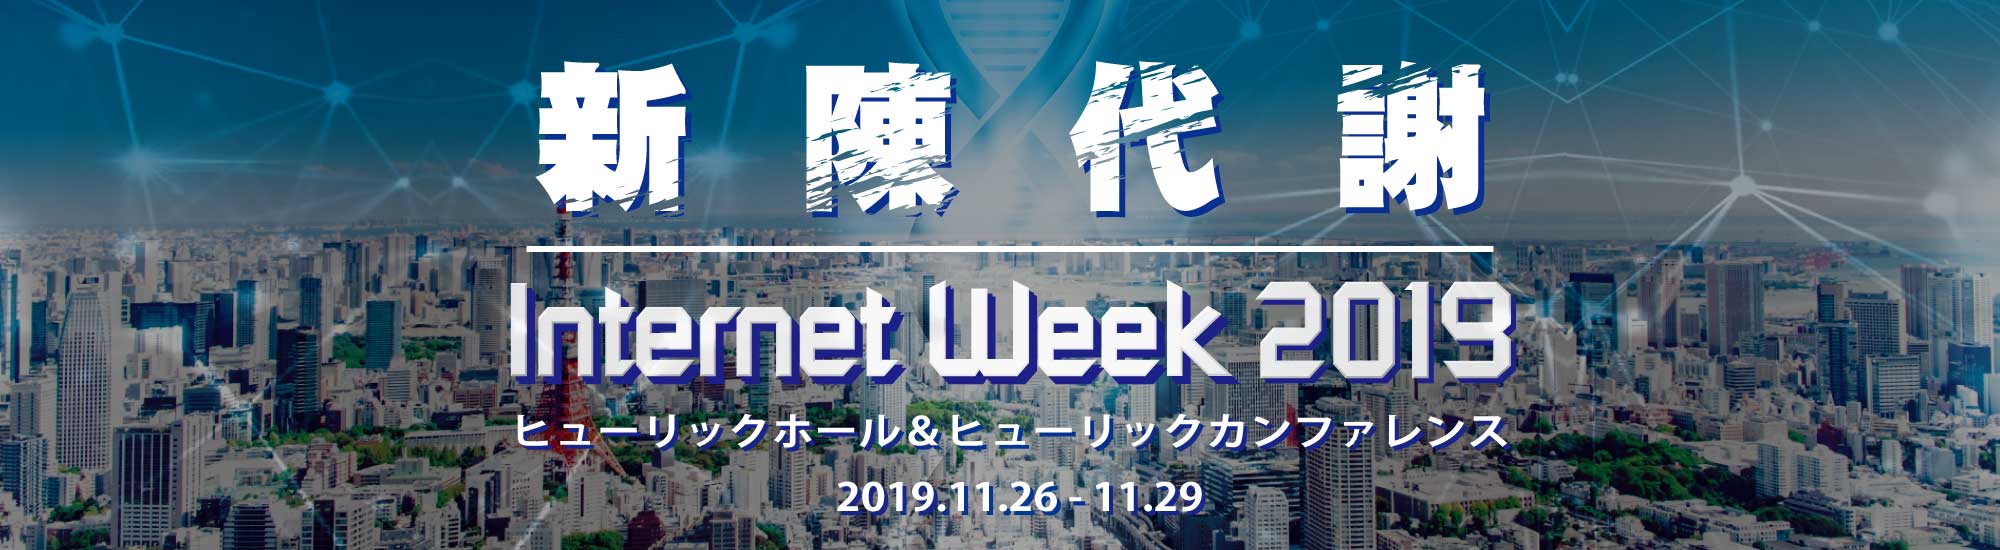 Internet Week 2018